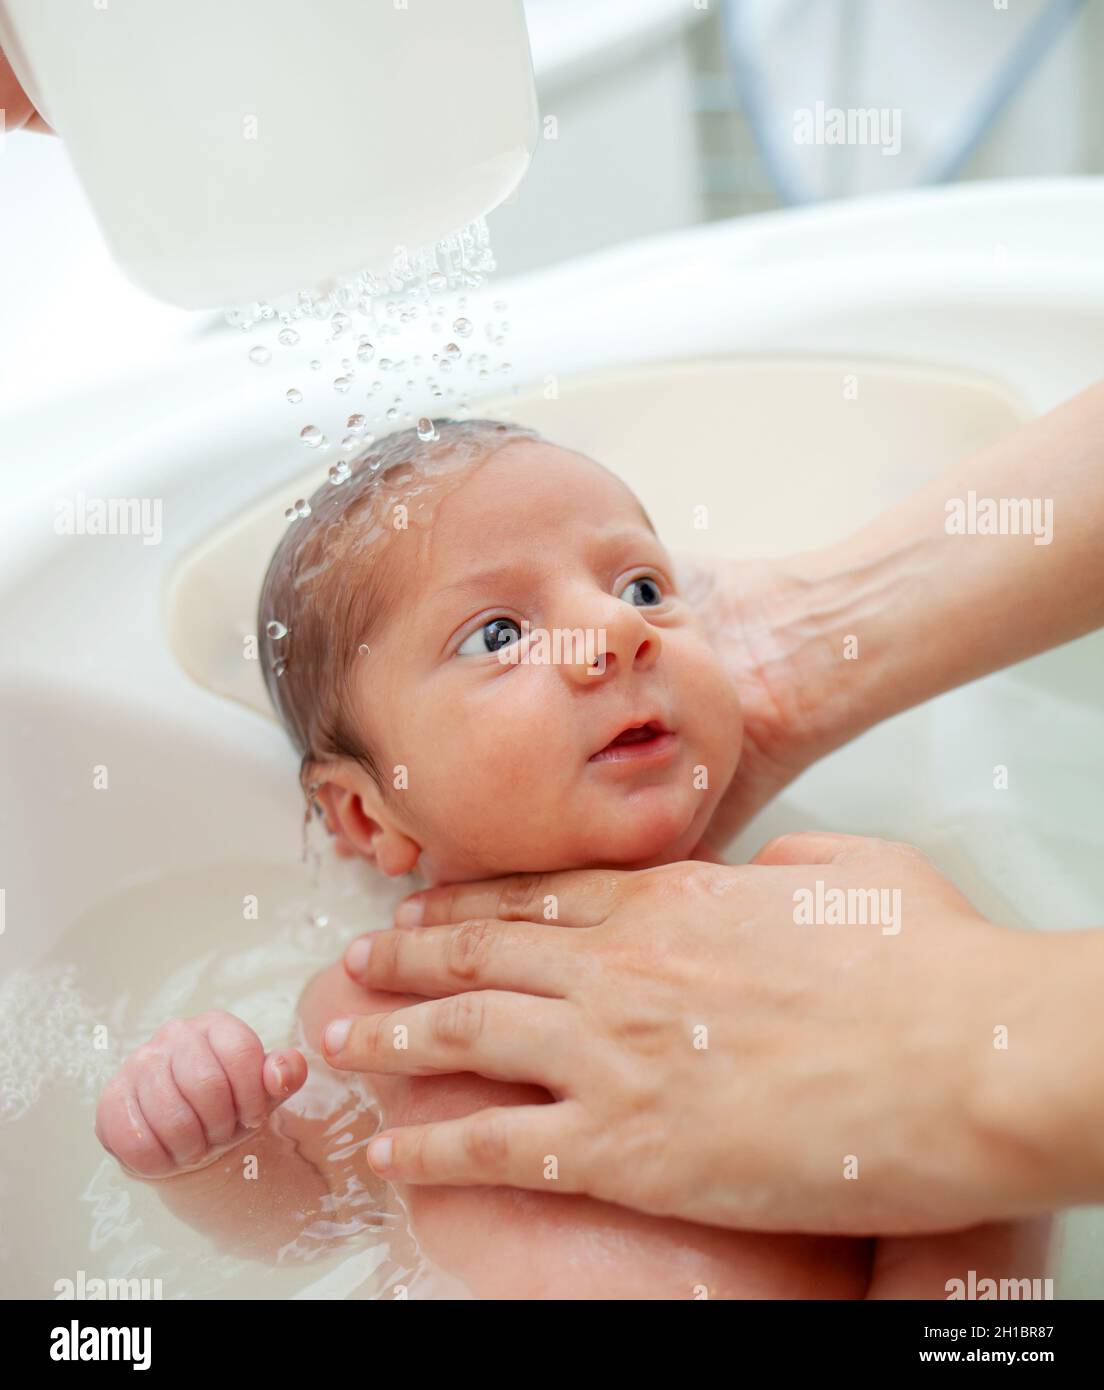 Cómo hacer del primer baño del bebé un momento especial